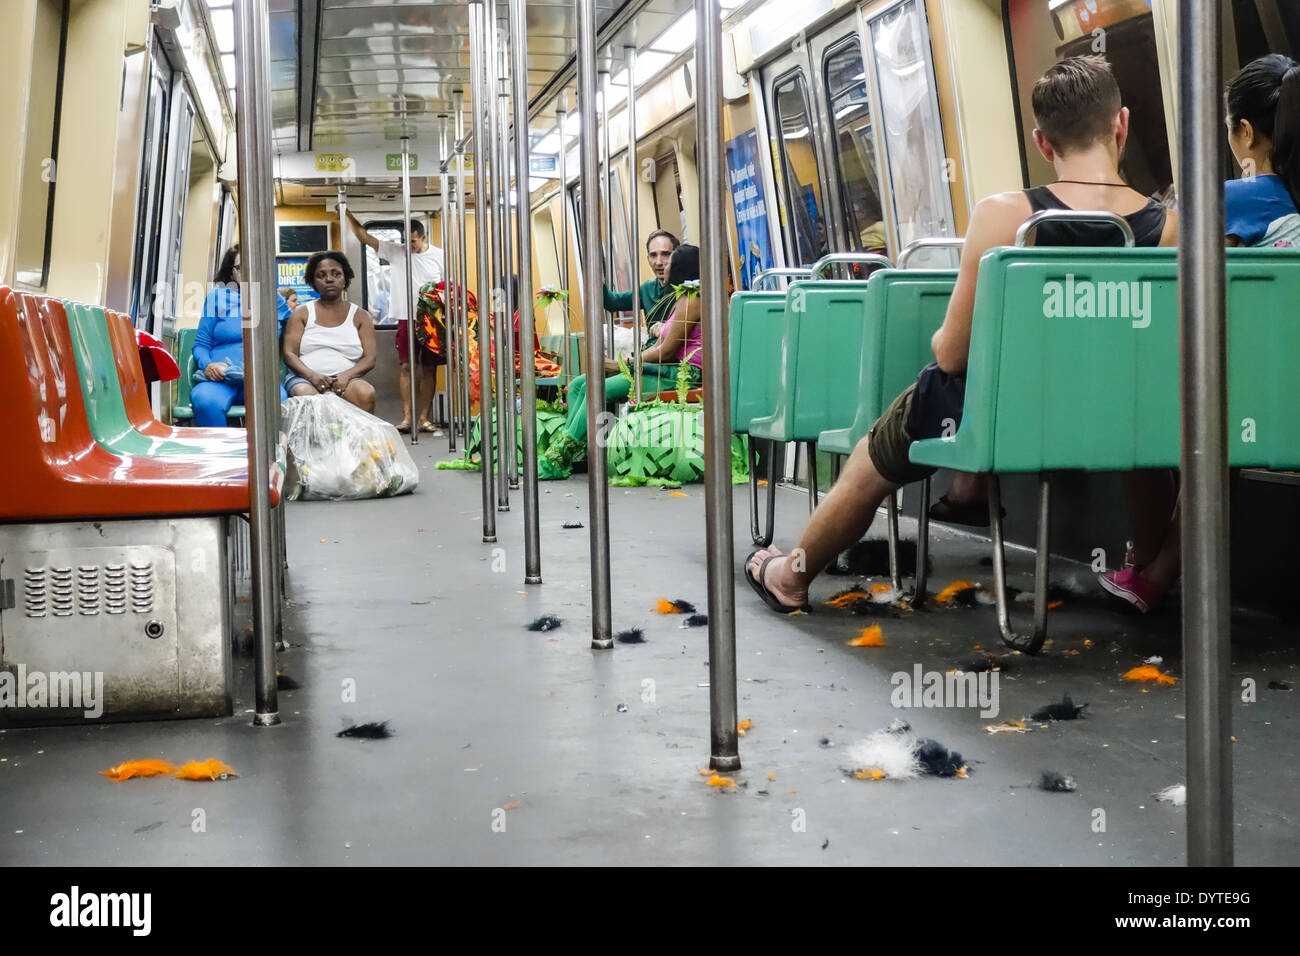 Rio de Janeiro, carnival, Metro, Brazil Stock Photo